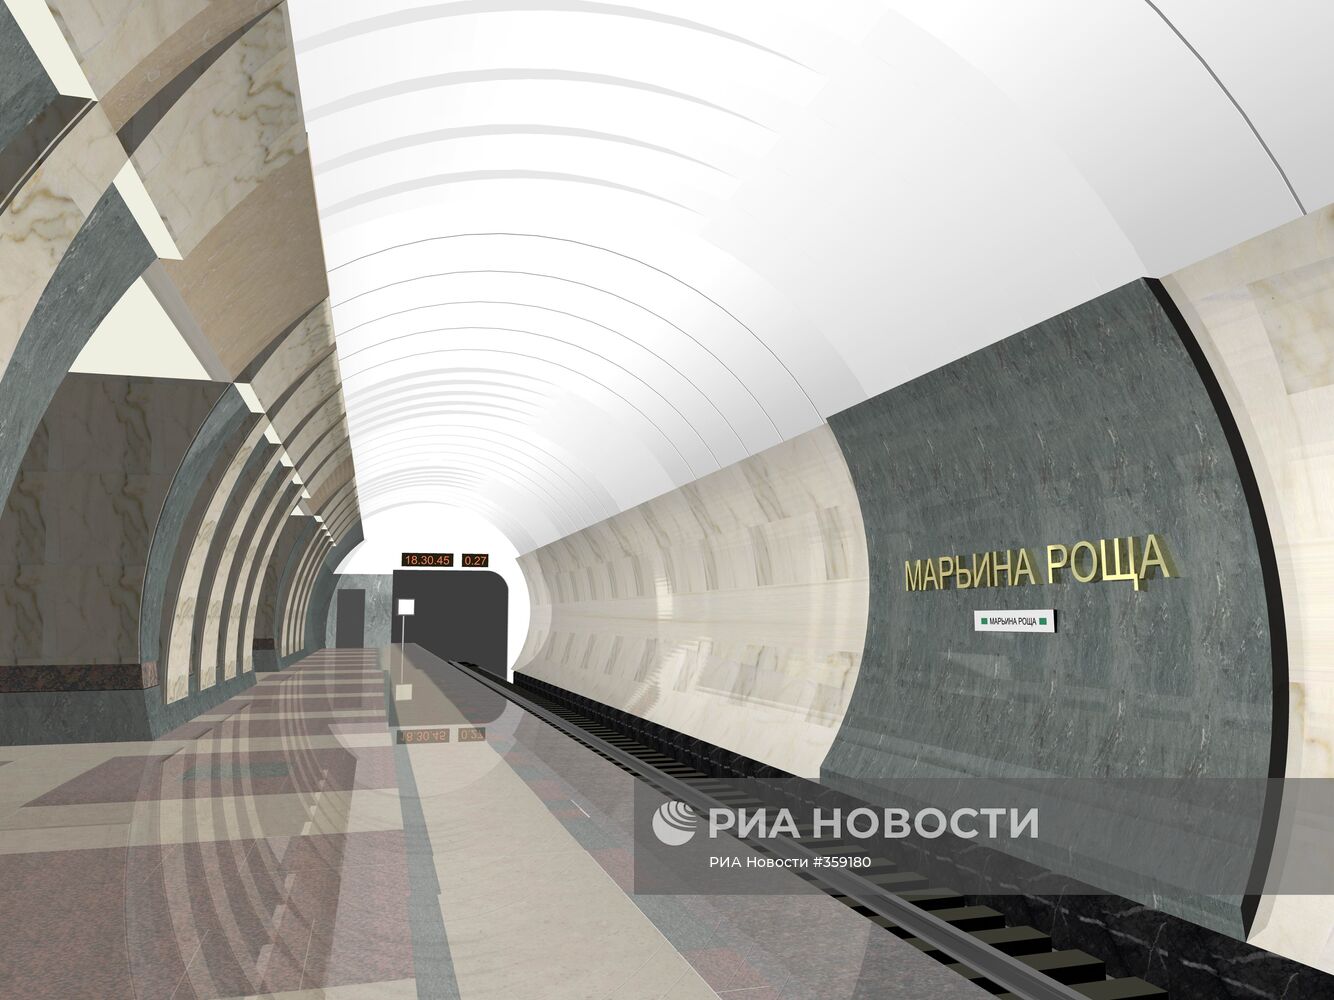 Представлены макеты строящихся станций метро